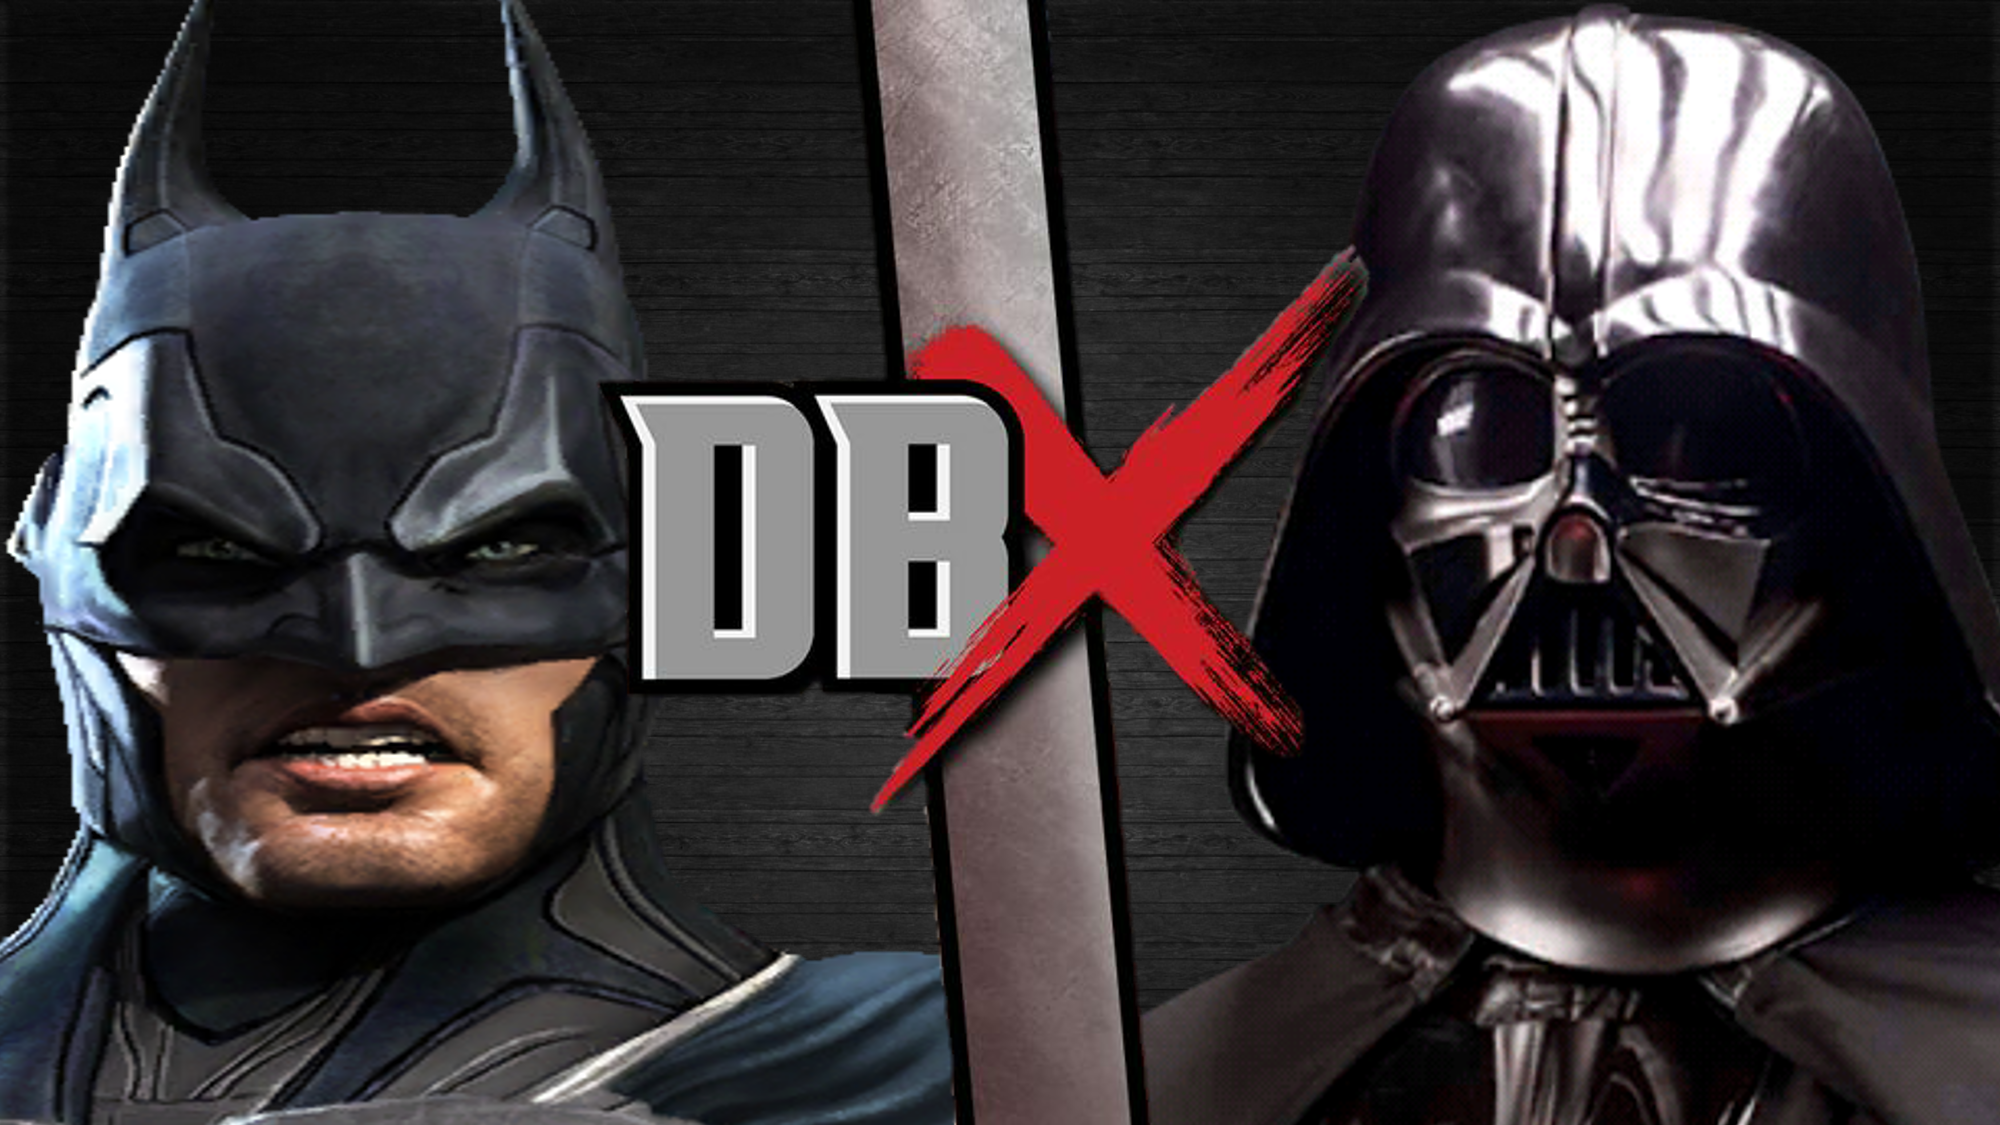 Batman vs Darth Vader | DBX Fanon Wikia | Fandom